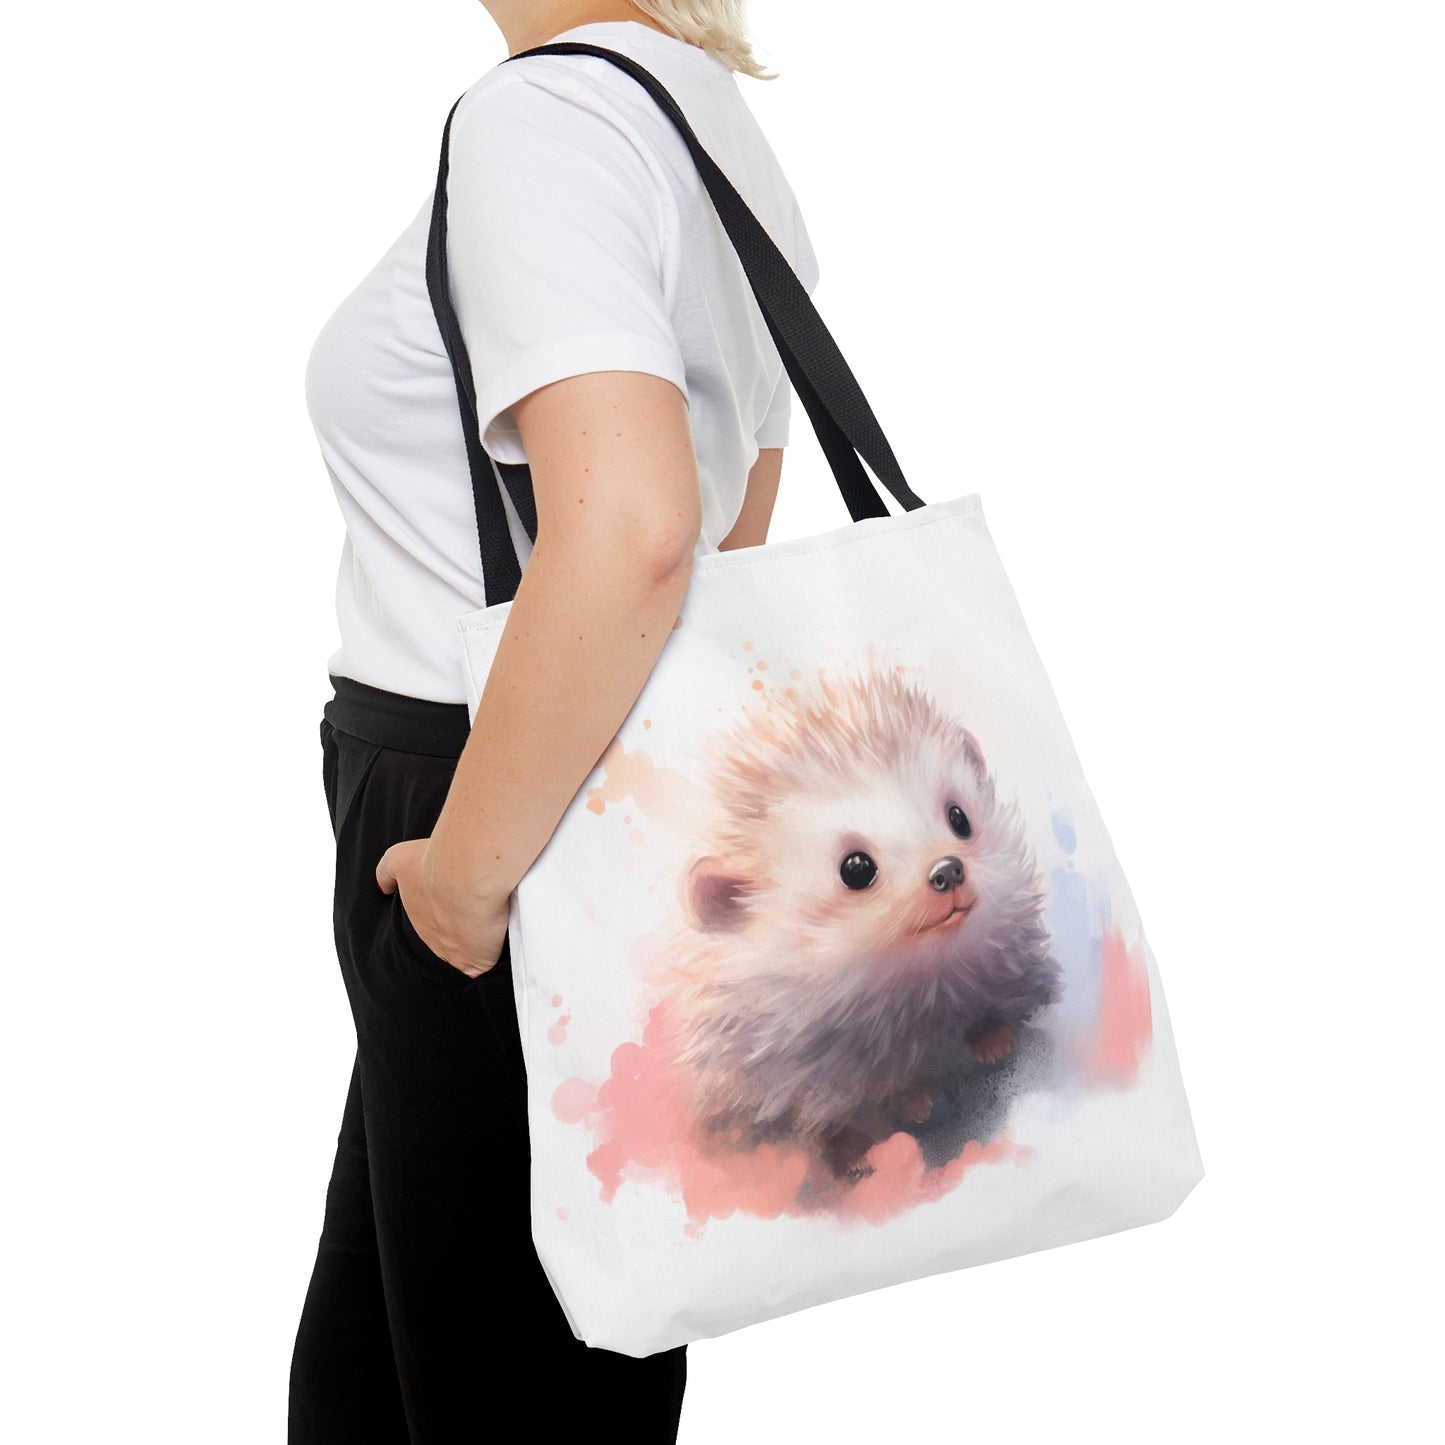 Little Hedgehog Tote Bag